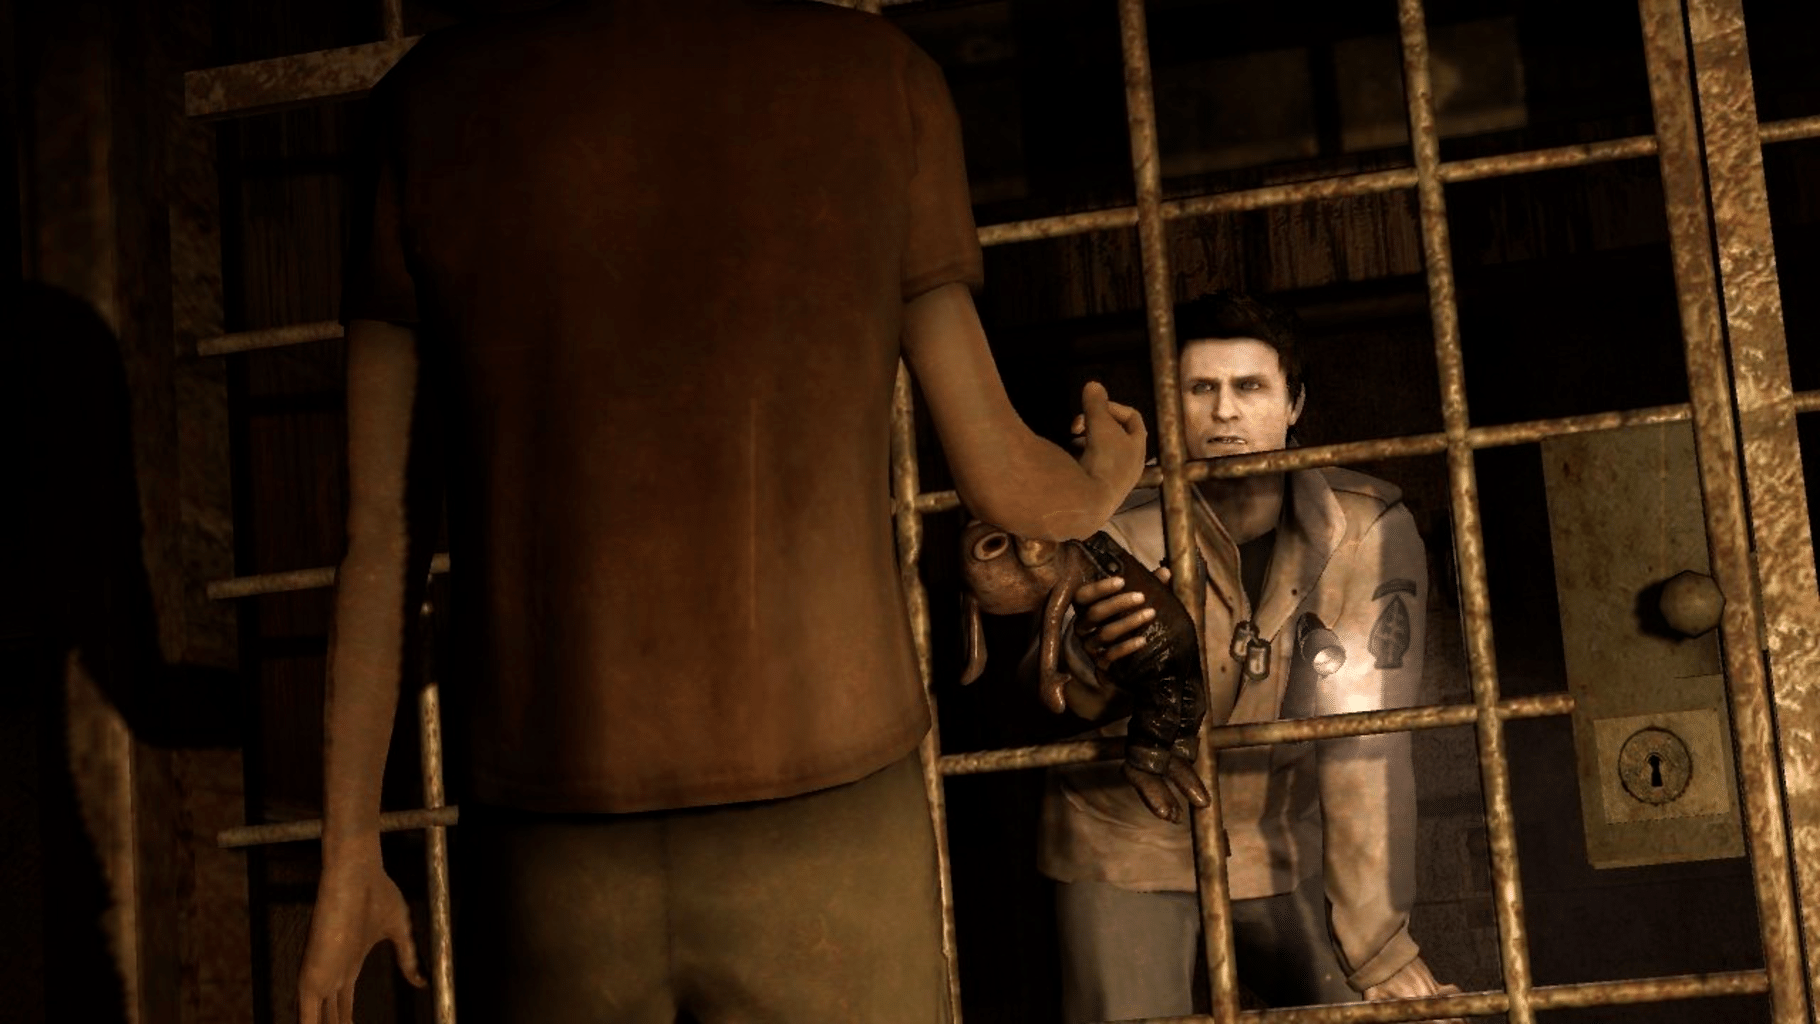 Silent Hill: Homecoming screenshot